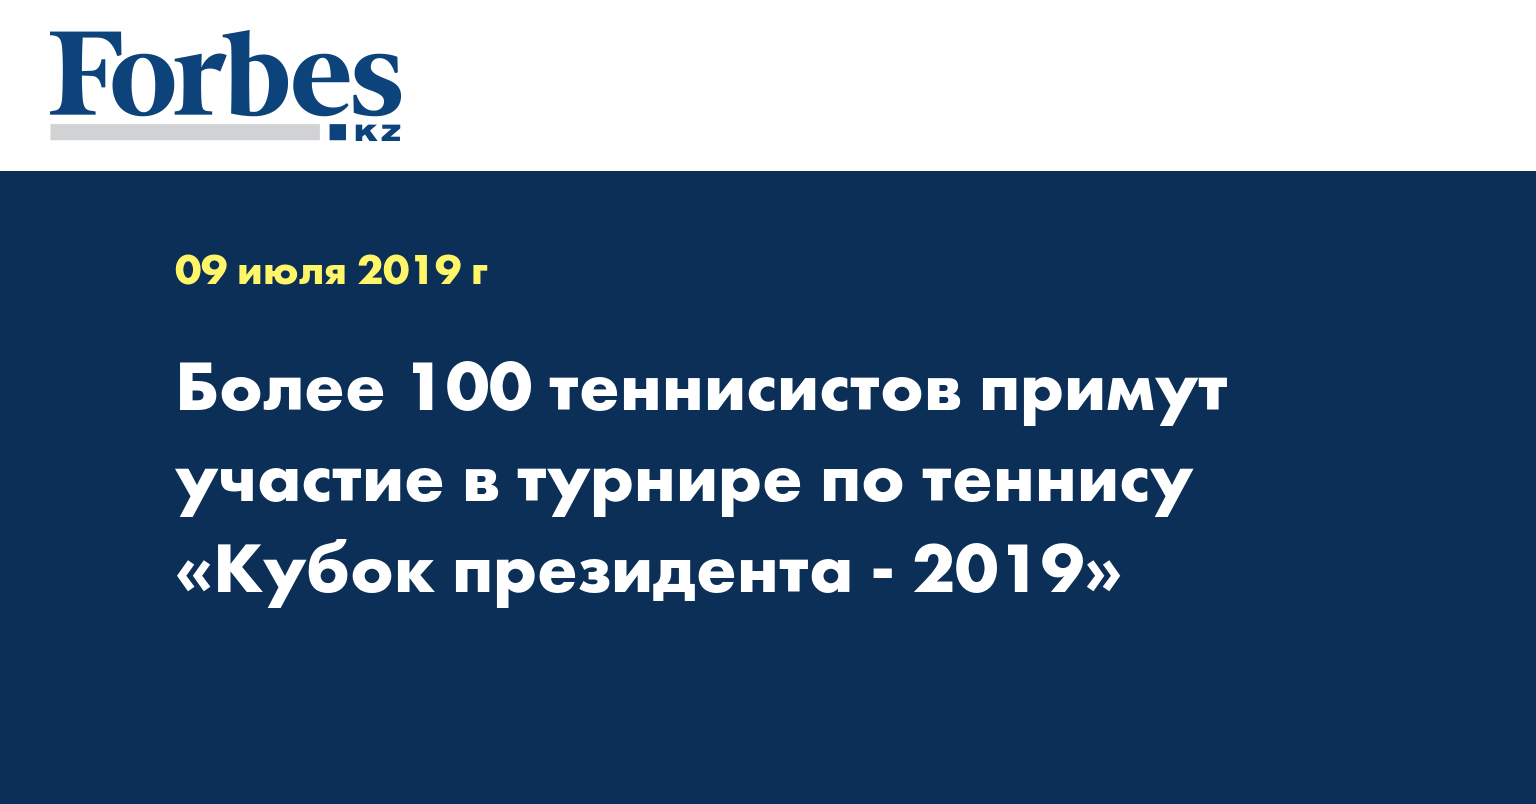 Более 100 теннисистов примут участие в турнире по теннису «Кубок президента - 2019»